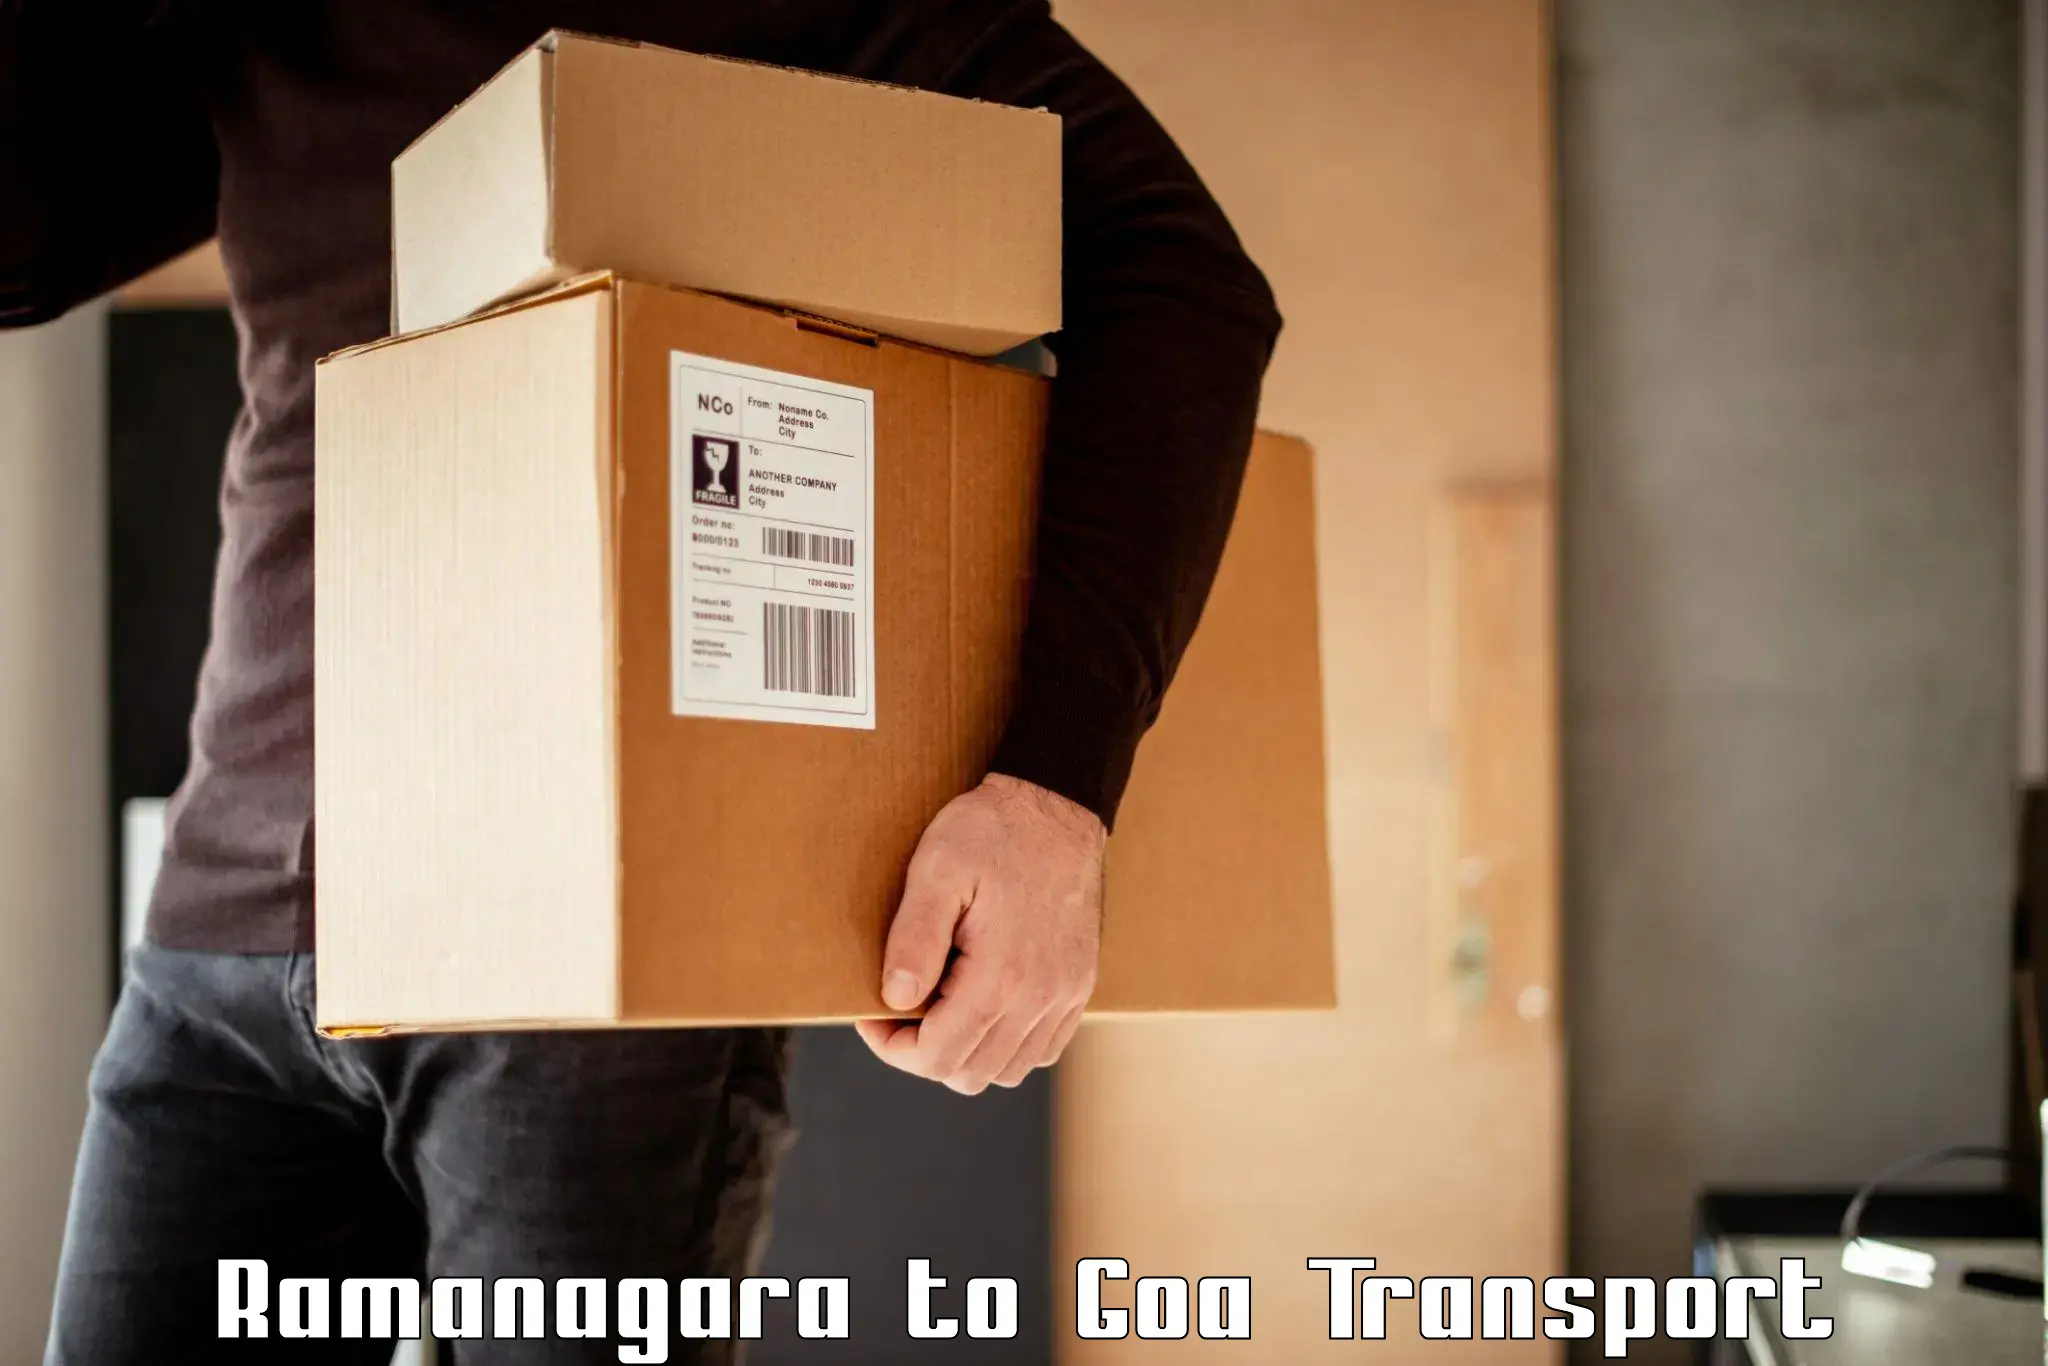 Cargo transportation services Ramanagara to Goa